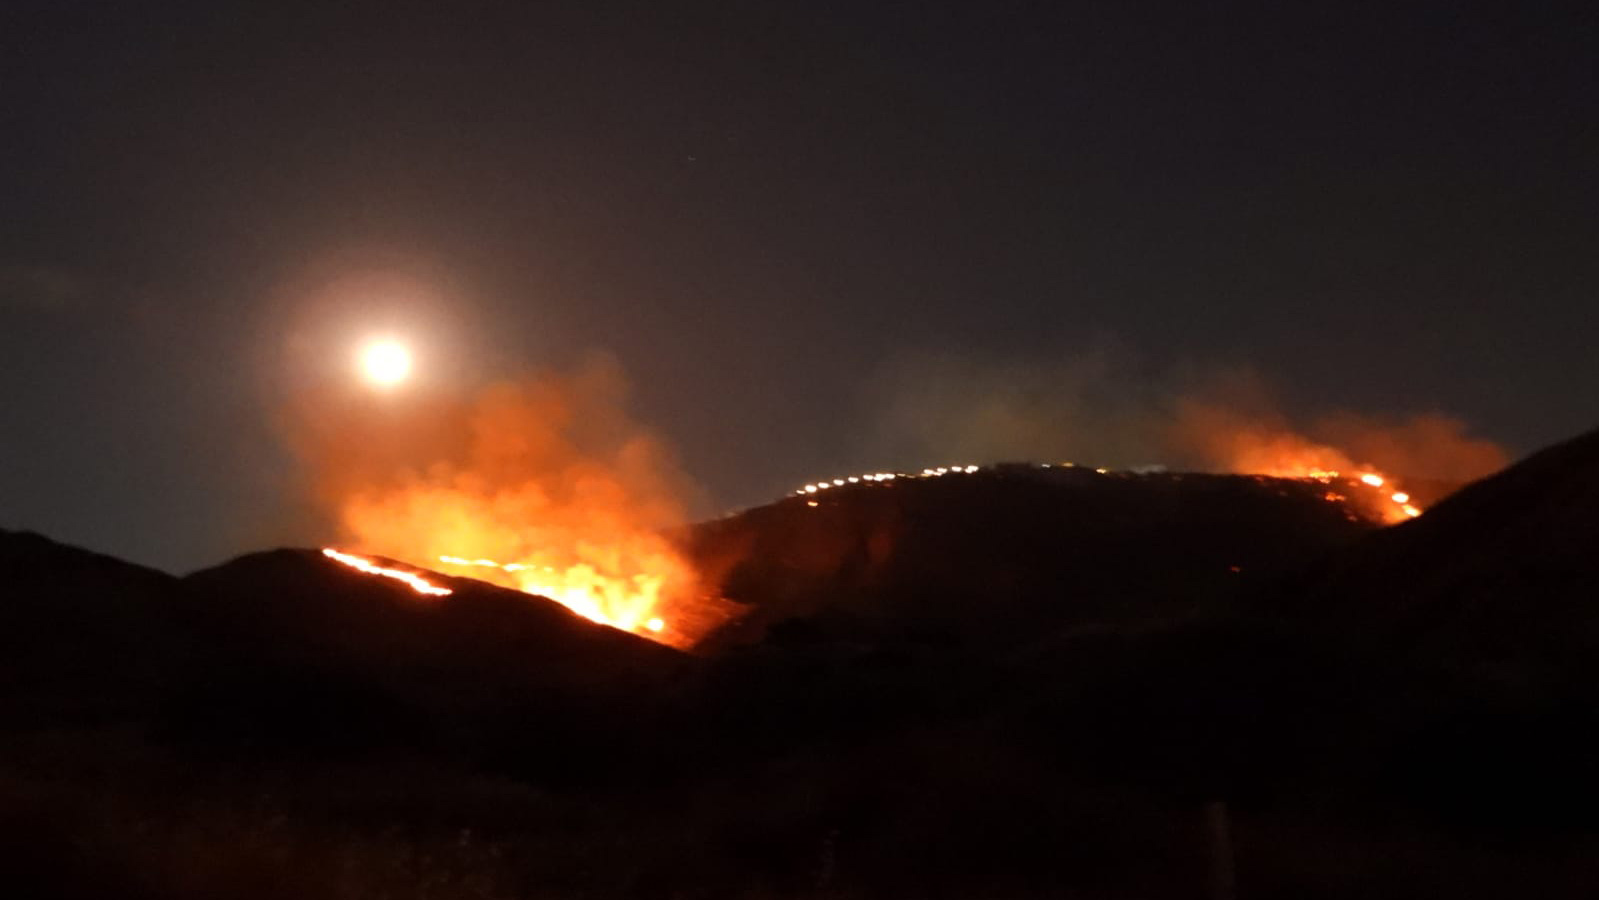 2,500 דונם משמורת הטבע סוסיתא נשרפו בשריפה שפרצה ב16 באוגוסט 2019. (צילום: עמי דורפמן/רשות הטבע והגנים)